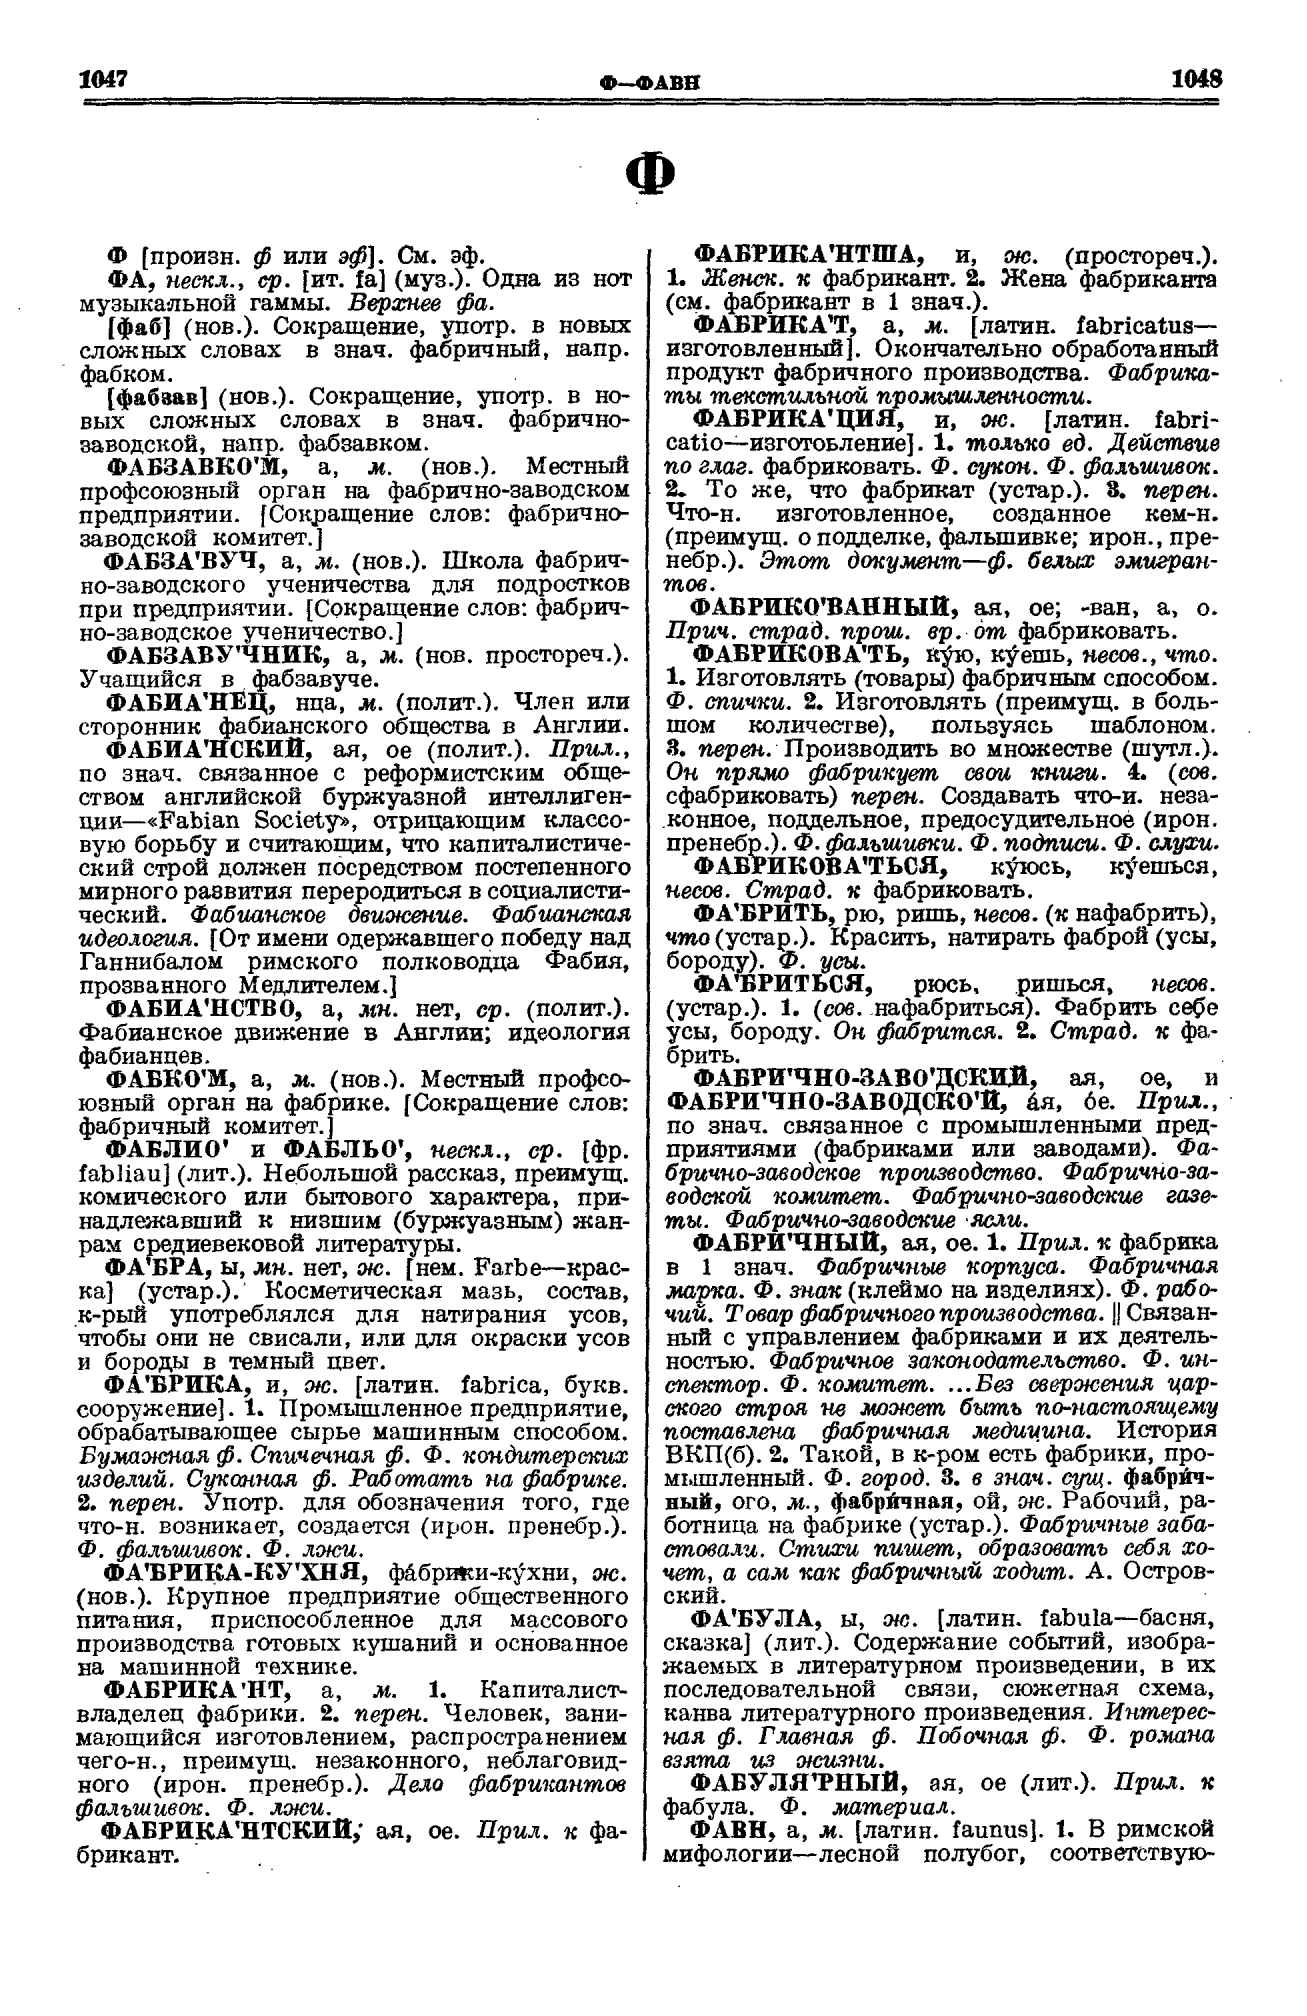 Фотокопия pdf / скан страницы 524 толкового словаря Ушакова (том 1)